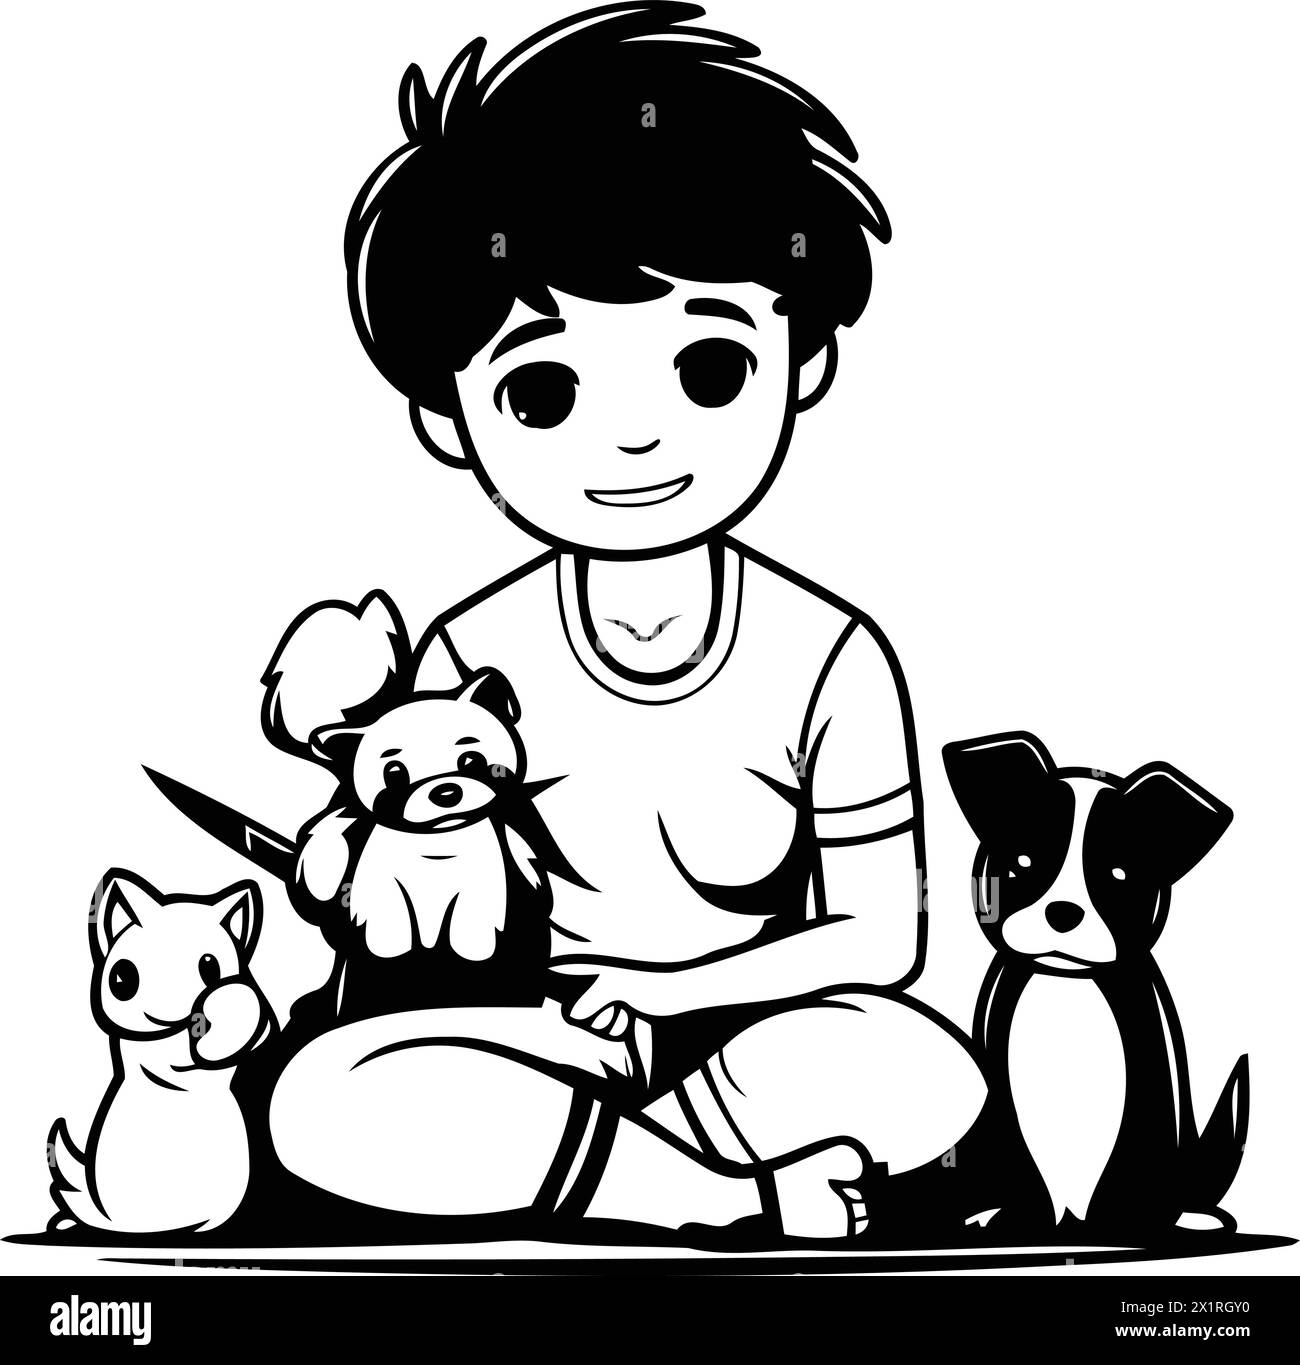 Un bambino carino che gioca con i suoi cani. Illustrazione di un cartone animato vettoriale. Illustrazione Vettoriale